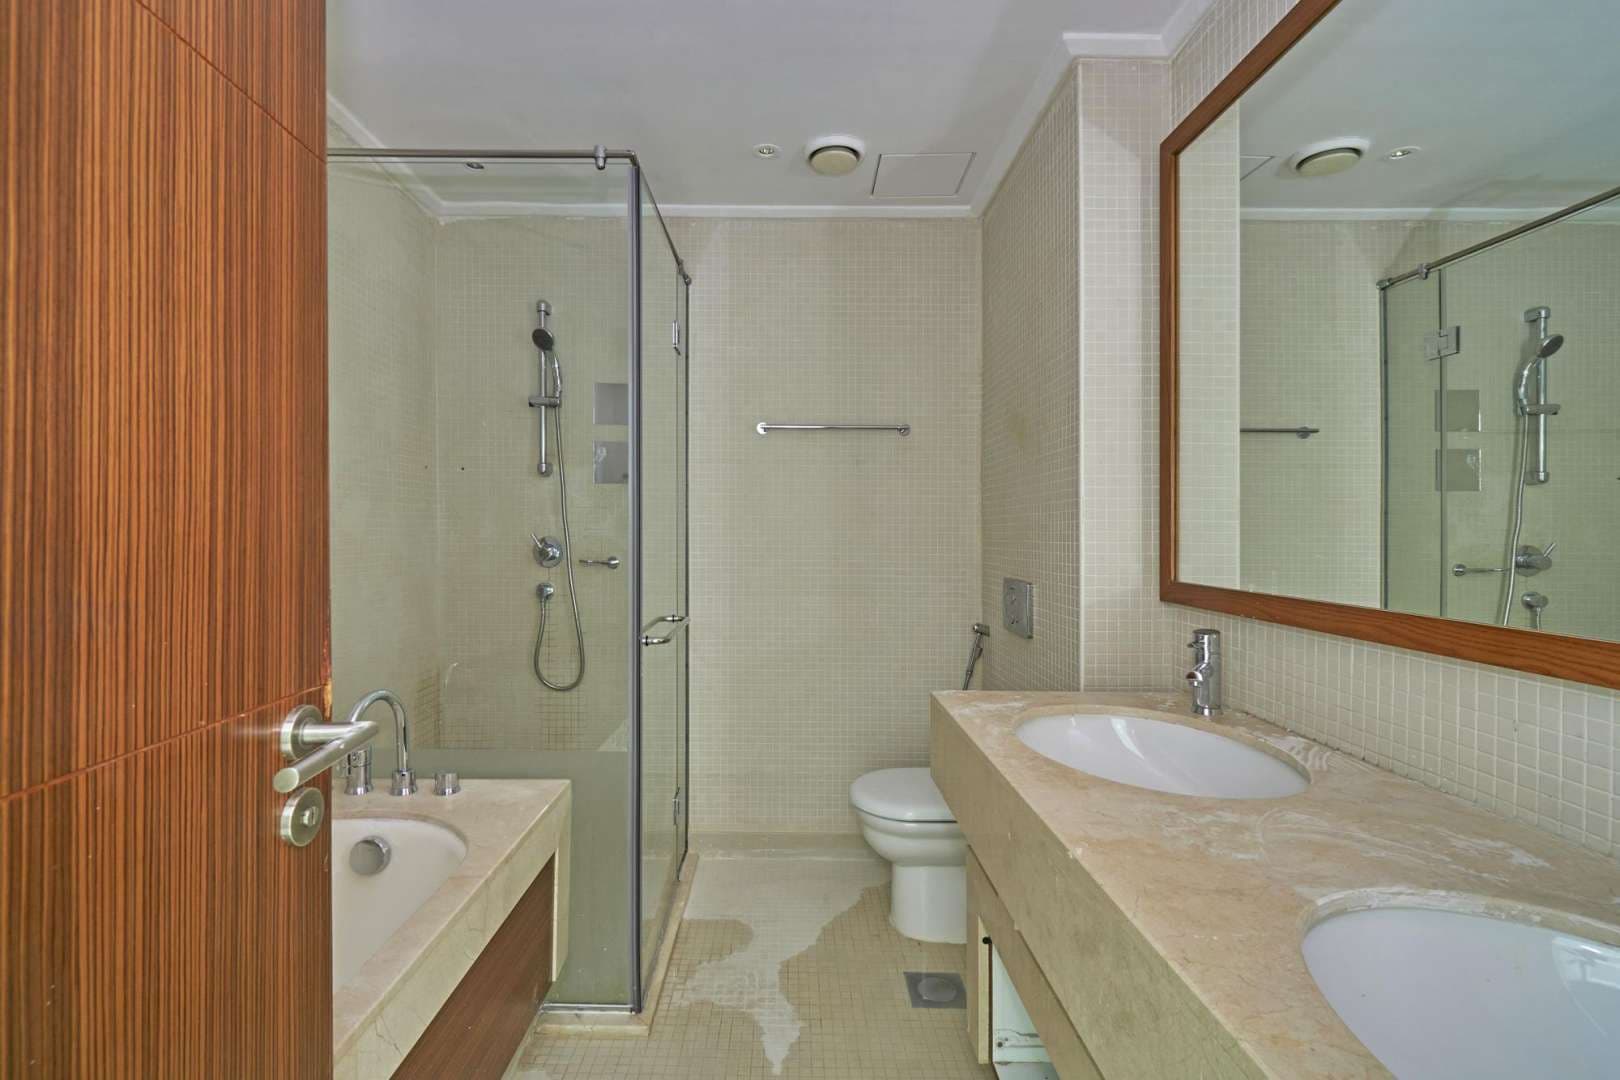 2 Bedroom Apartment For Rent Marina Promenade Lp05291 2bc6b4b3aab04400.jpg